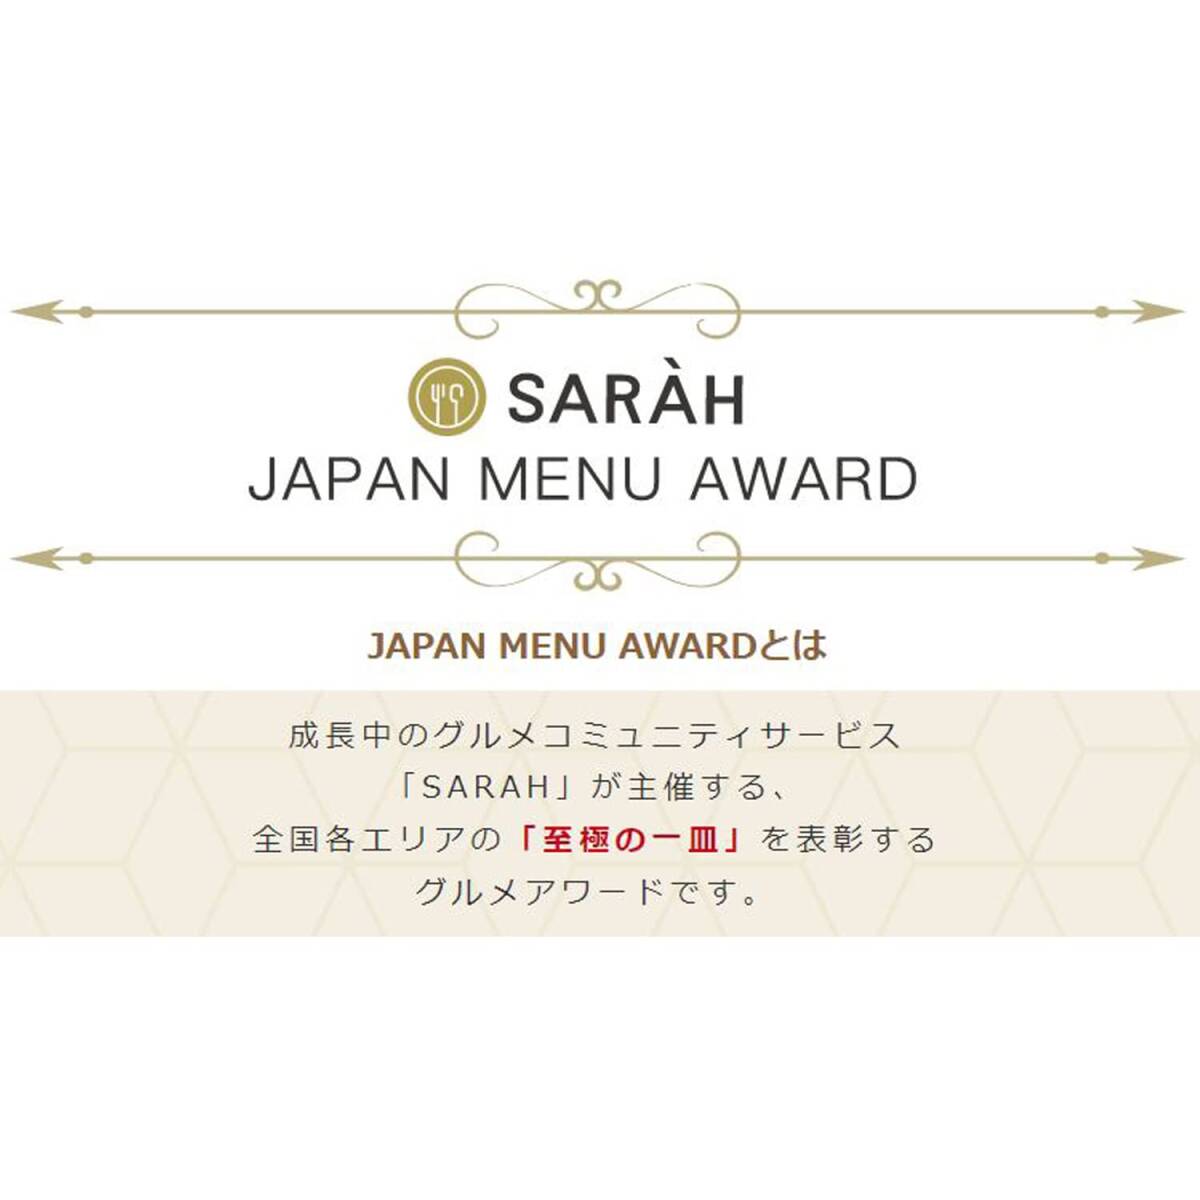 ハウス JAPAN MENU AWARD 完熟トマトのバターチキンカレー 180g×5個 [レンジ化対応・レンジで簡単調理可能]_画像3